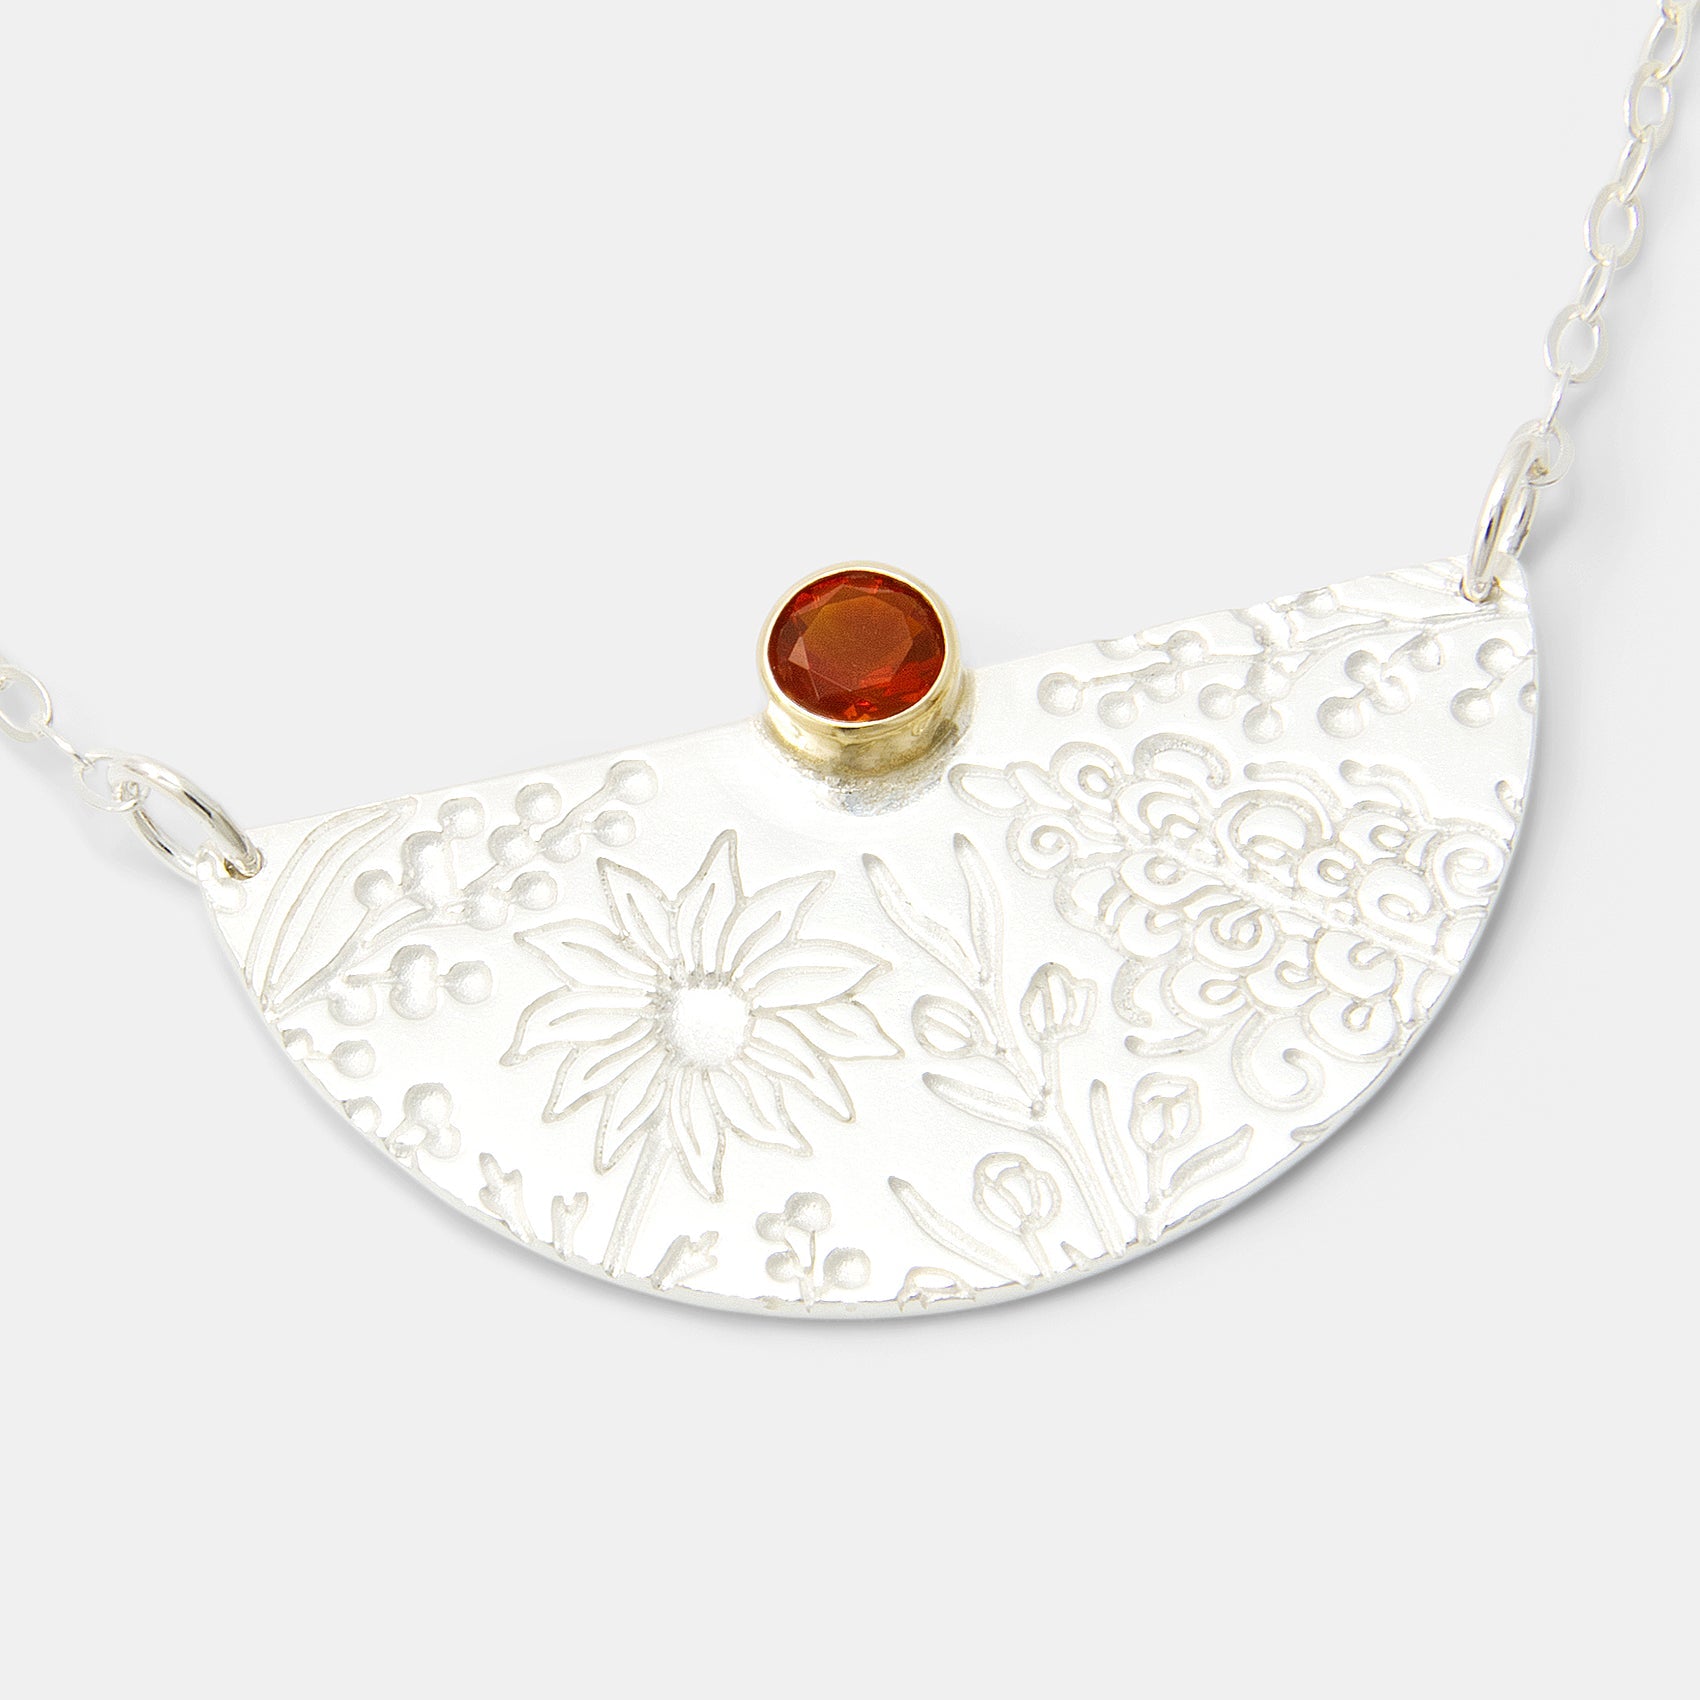 Australian Flora Half Pattern & Fire Opal Necklace - Simone Walsh Jewellery Australia